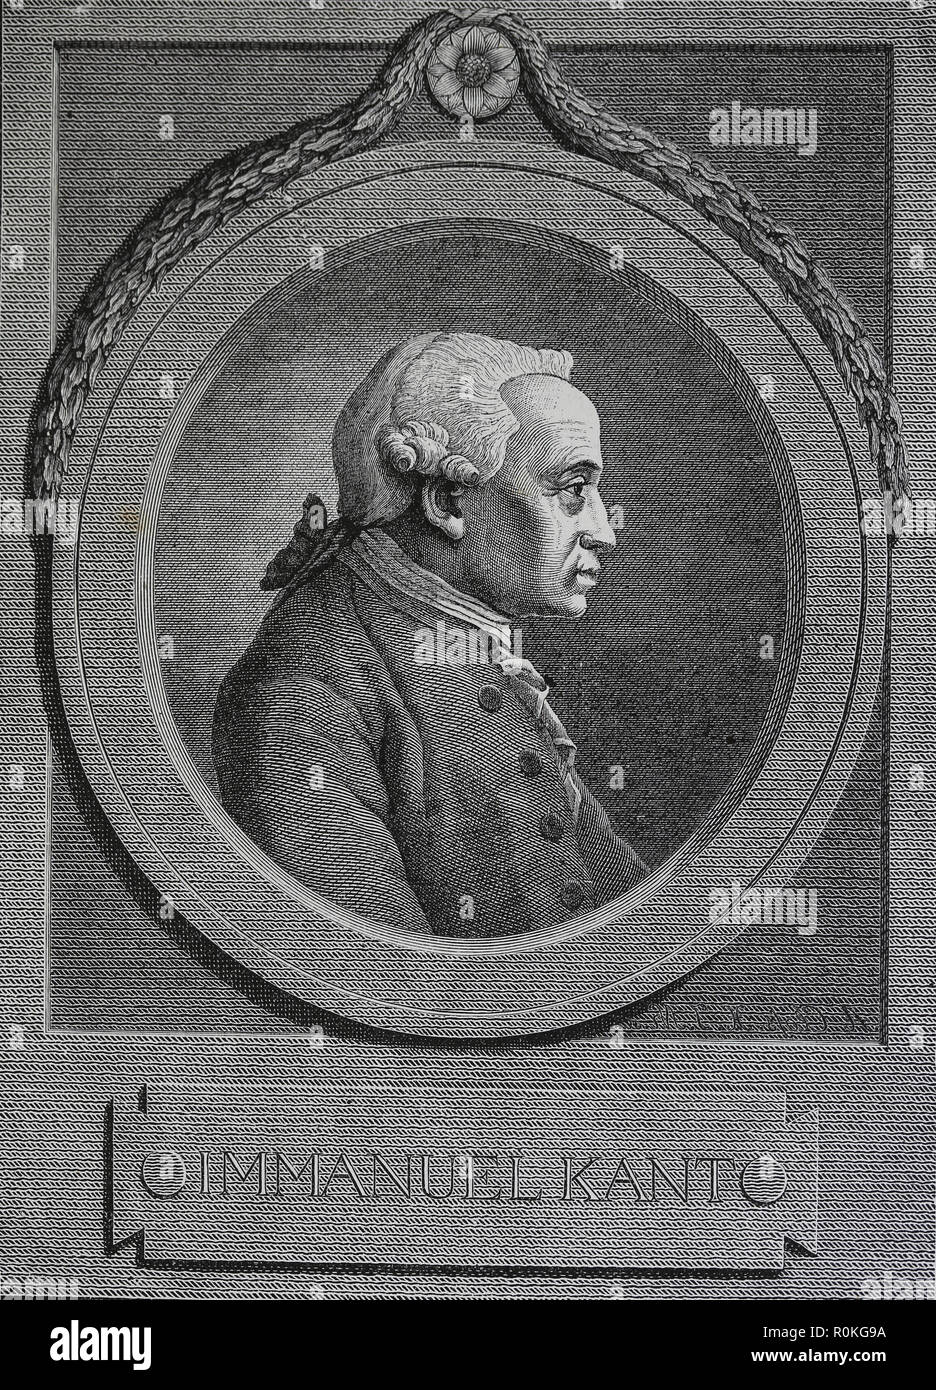 Emmanuel Kant (1724-1804). Philosophe allemand. Gravure de Germania, 1882. Banque D'Images